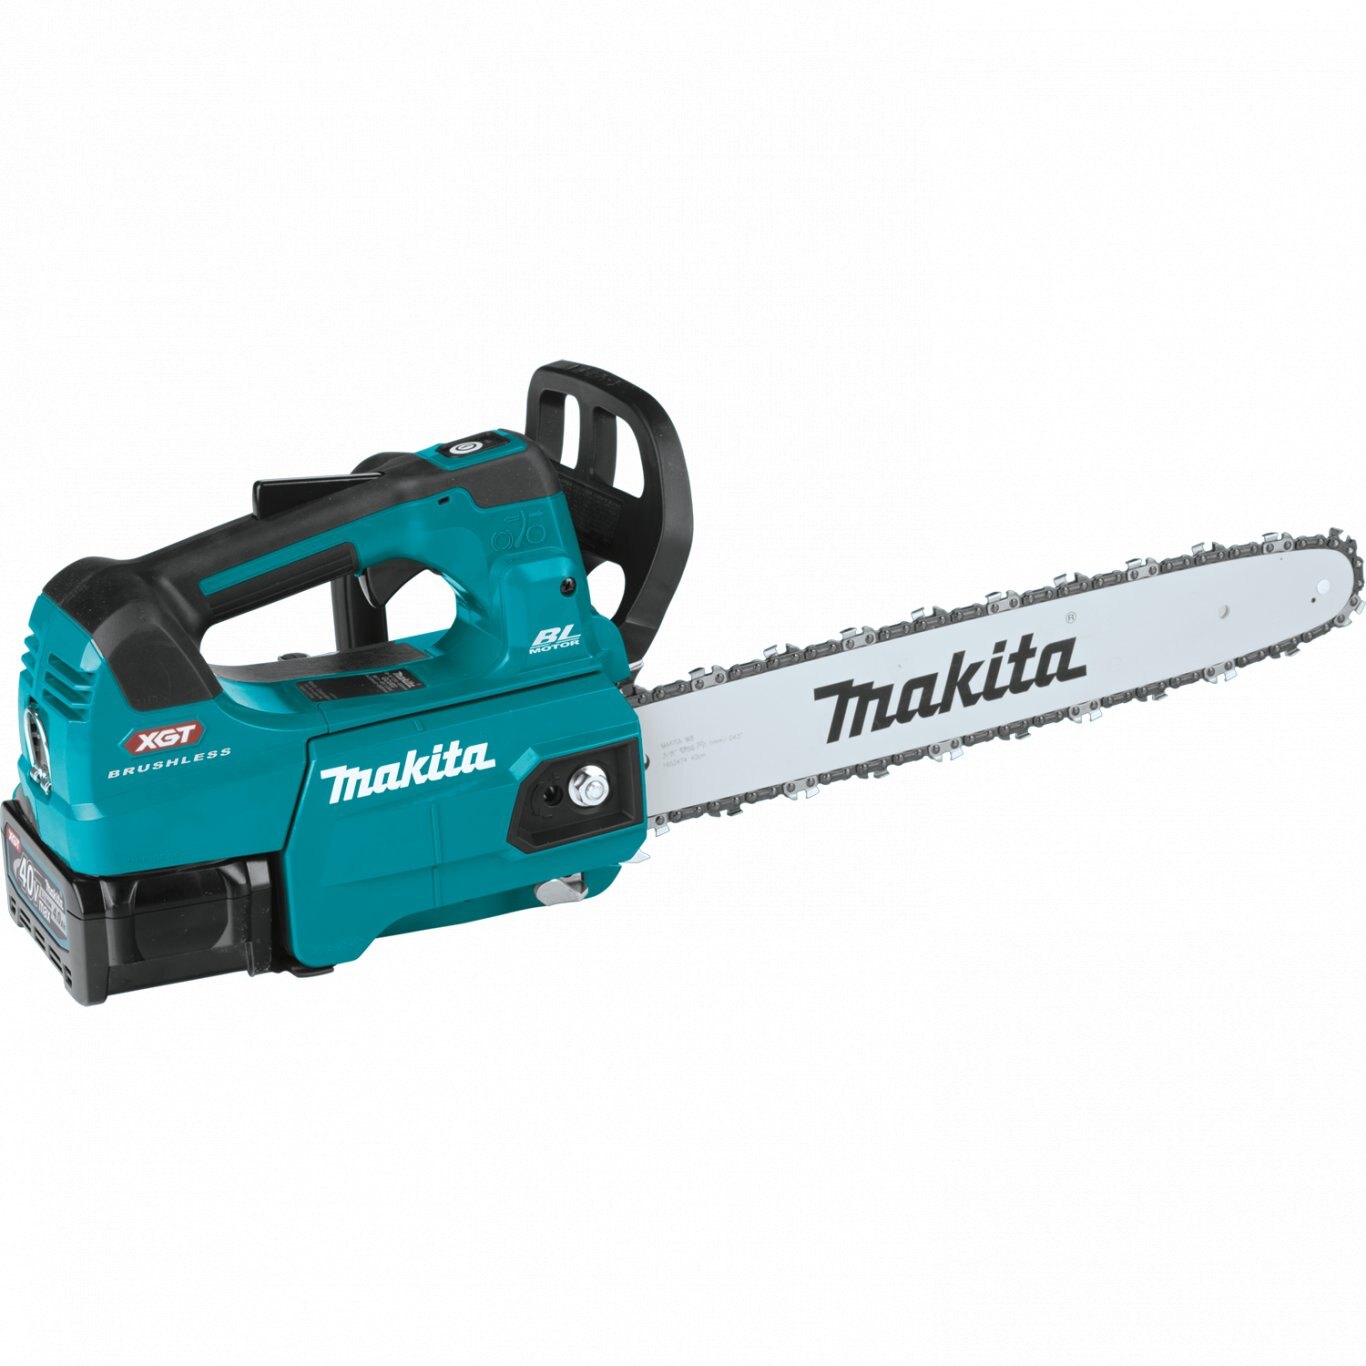 Makita 40V max XGT® Brushless Cordless 16 Top Handle Chain Saw Kit (4.0Ah)